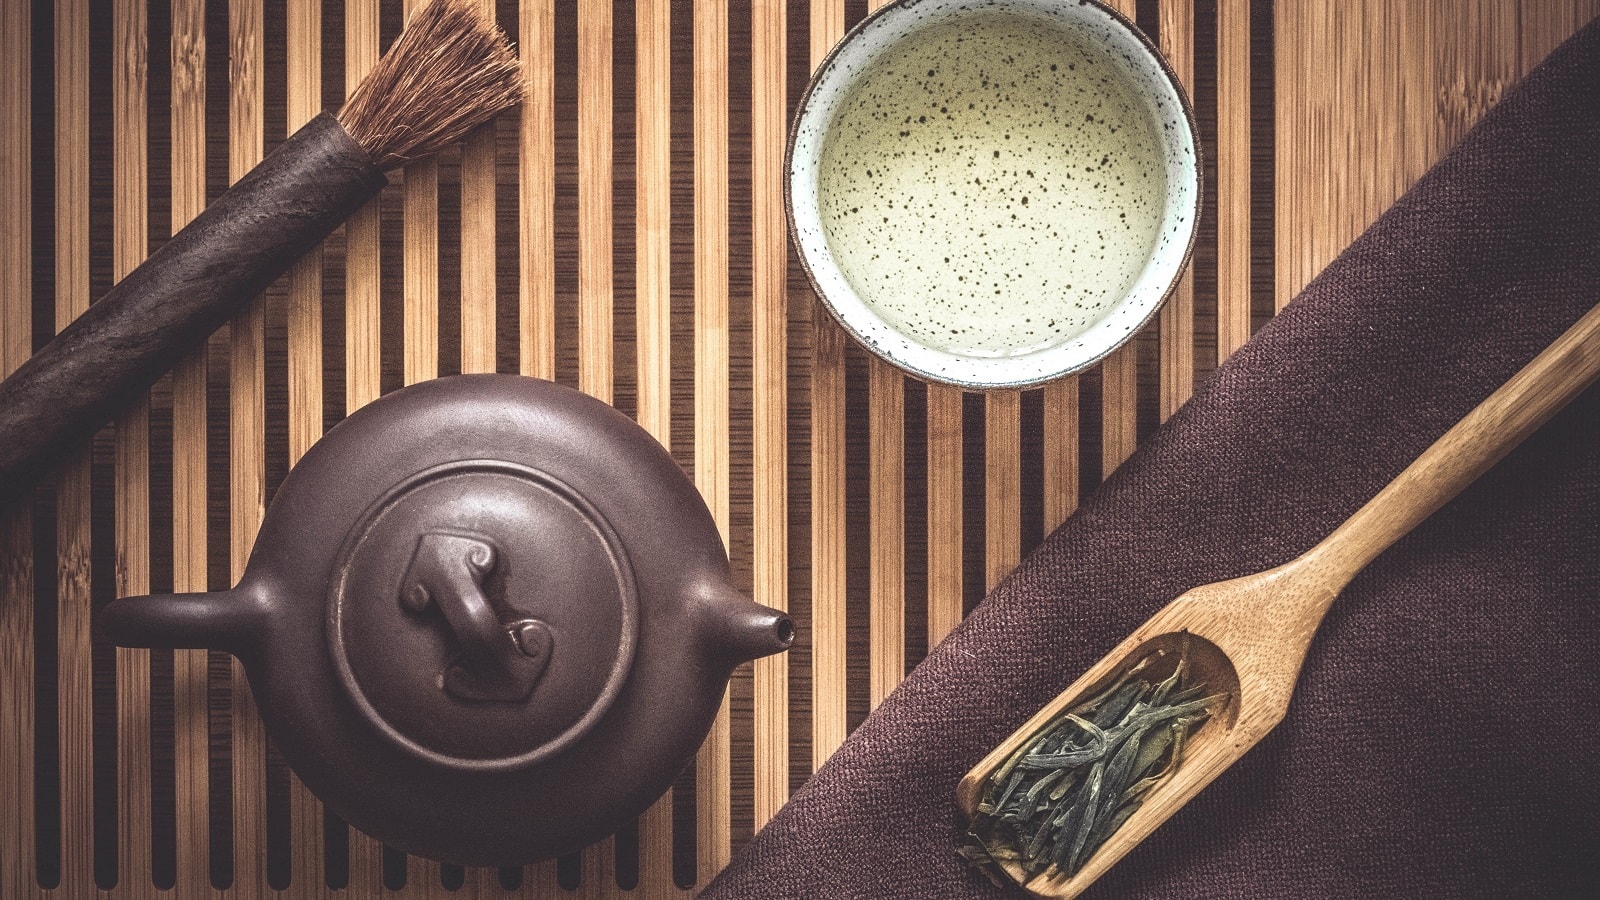 Weißer Tee, Teezeremonie: Braune Teekanne neben einer Tasse mit Weiß Tee, einem Bambuslöffel mit getrockneten Teeblättern und einem Pinsel auf hölzernem Hintergrund, von Oben.